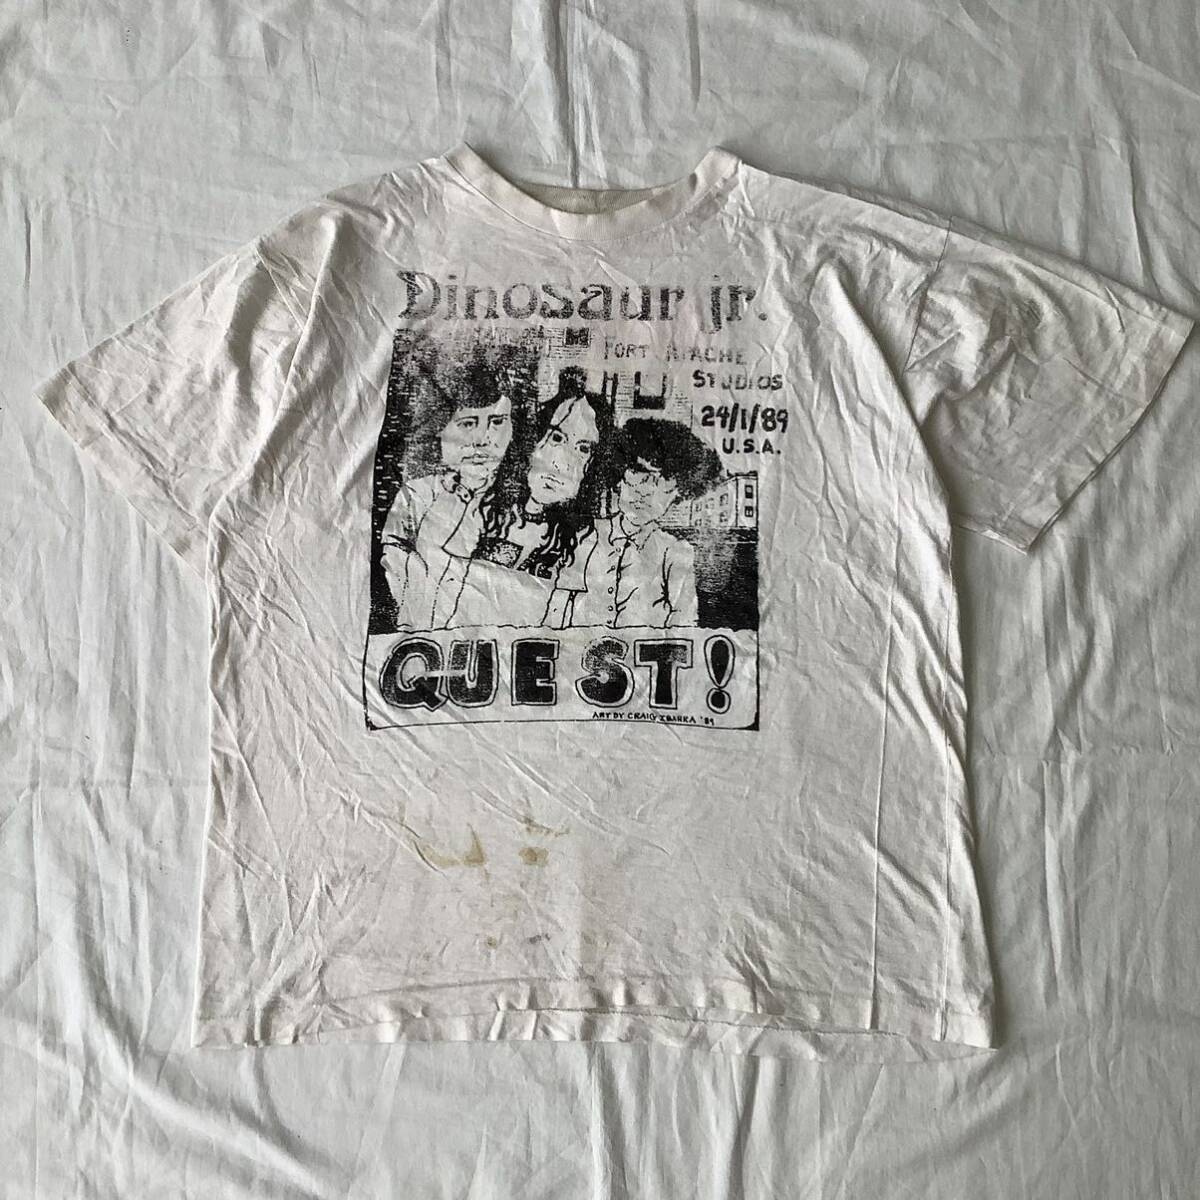 スペシャル! 1989 Dinosaur Jr. Guest パーキングロット ヴィンテージ Tシャツ シングルステッチ 80s 90sバンド Nirvana ダイナソーJr_画像1